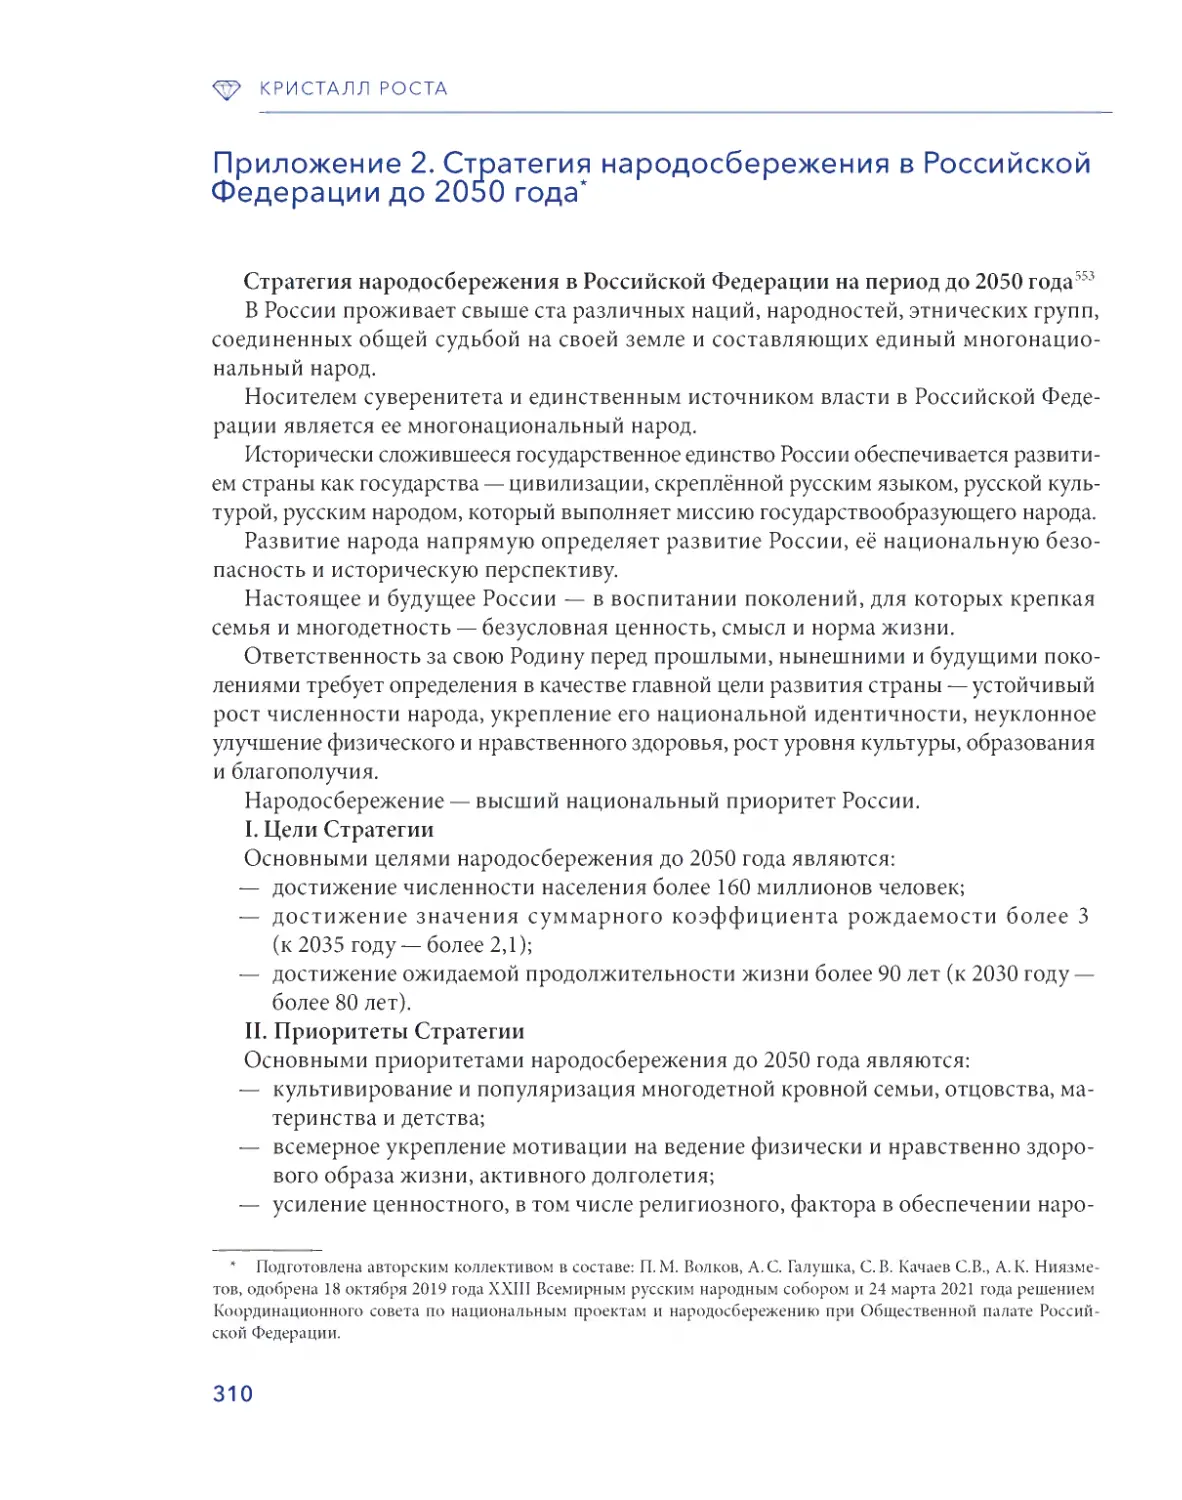 Приложение 2. Стратегия народосбережения в Российской Федерации до 2050 г